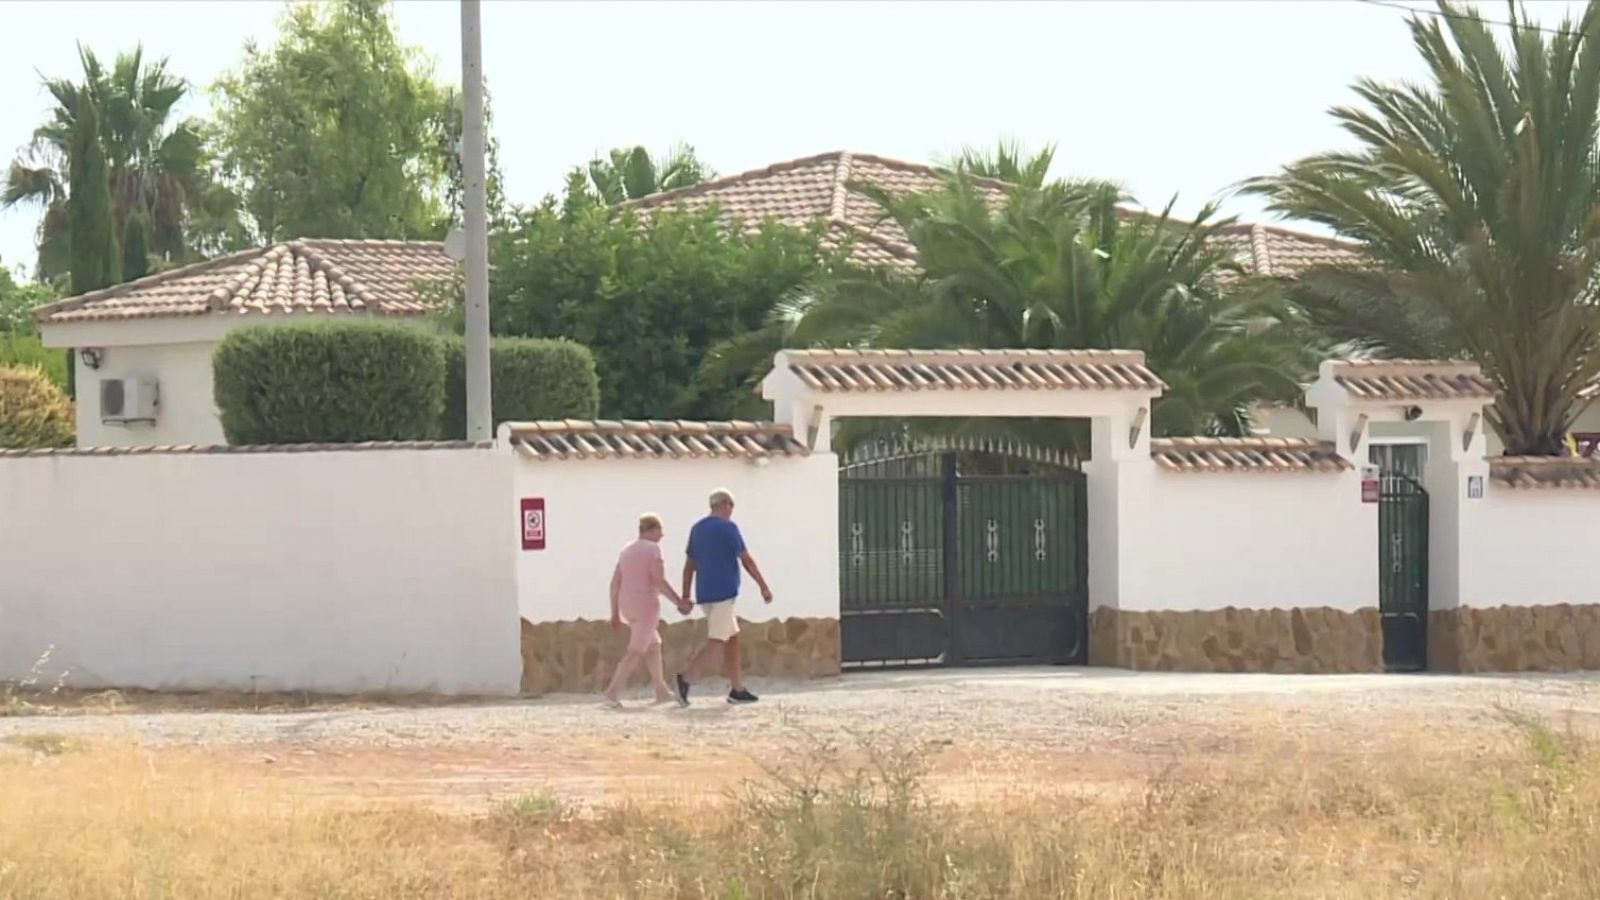 Veinte años viviendo en una urbanización ilegal de Murcia